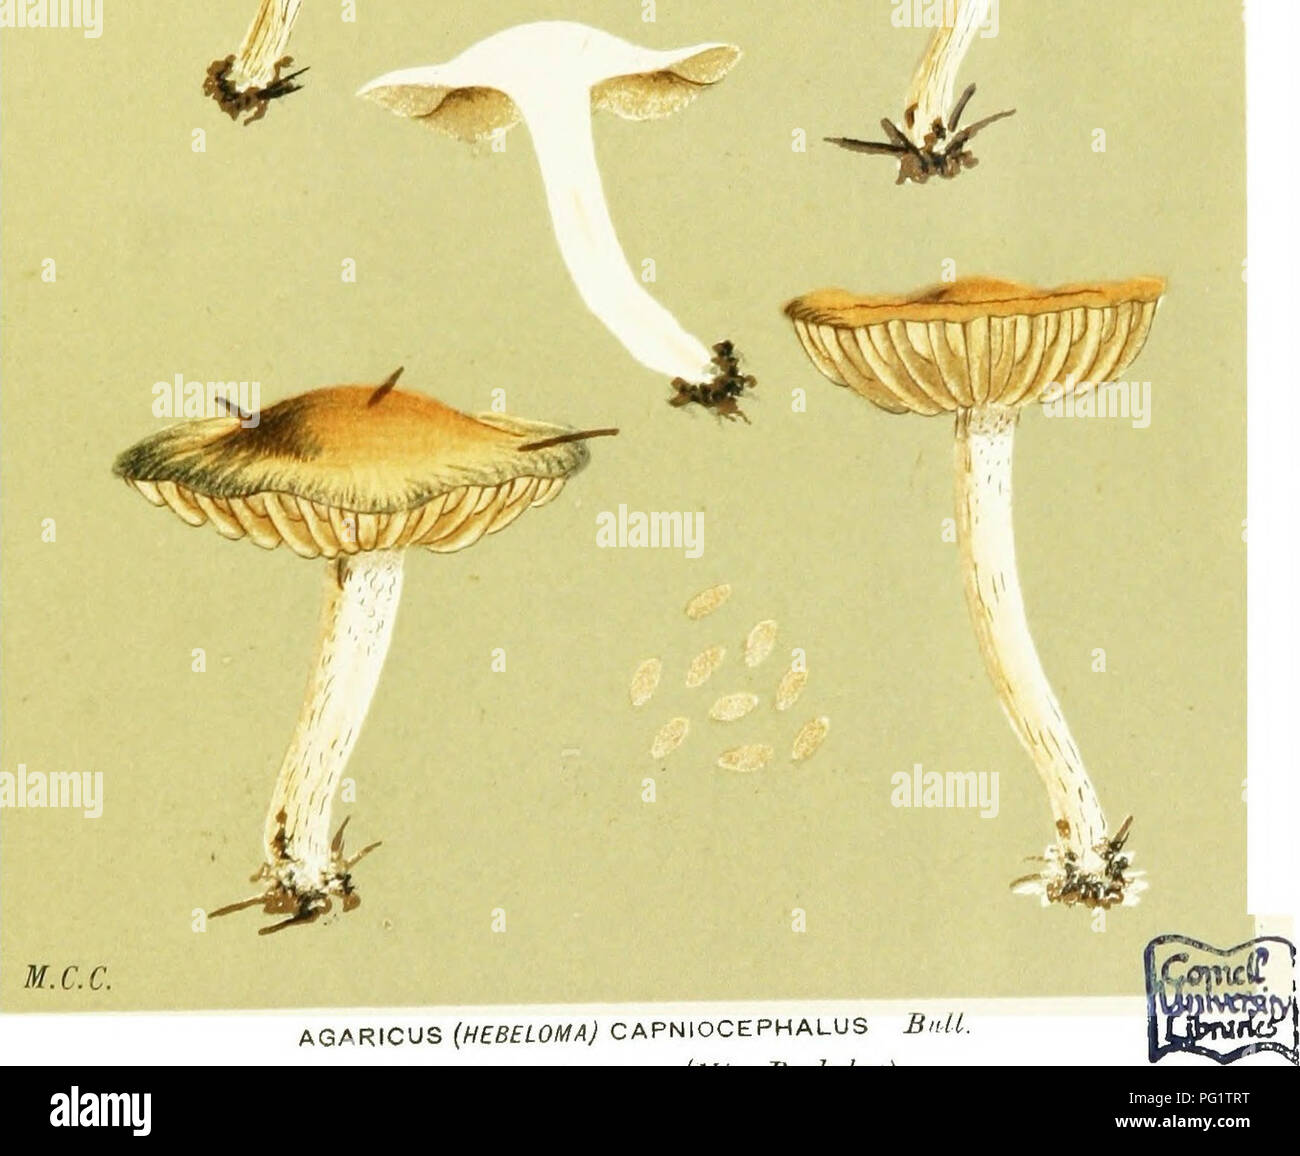 . Abbildungen der britischen Pilze (hymenomycetes) als Atlas für das "Handbuch der britischen Pilze" dienen. Pilze; Botanik. /*' 4,^mxmv,. ,. AGARICUS (HEBELOMA) CAPNIOCEPHALUS £&gt; M. aiiion;/^/piiK - Imri-. s. Ciliiv. s Berkeley). Bitte beachten Sie, dass diese Bilder sind von der gescannten Seite Bilder, die digital für die Lesbarkeit verbessert haben mögen - Färbung und Aussehen dieser Abbildungen können nicht perfekt dem Original ähneln. extrahiert. Cooke, M. C. (Mordecai Cubitt), b. 1825; Cooke, M. C. (Mordecai Cubitt), b. 1825. Handbuch der britischen Pilze. London, Williams und Norgate Stockfoto